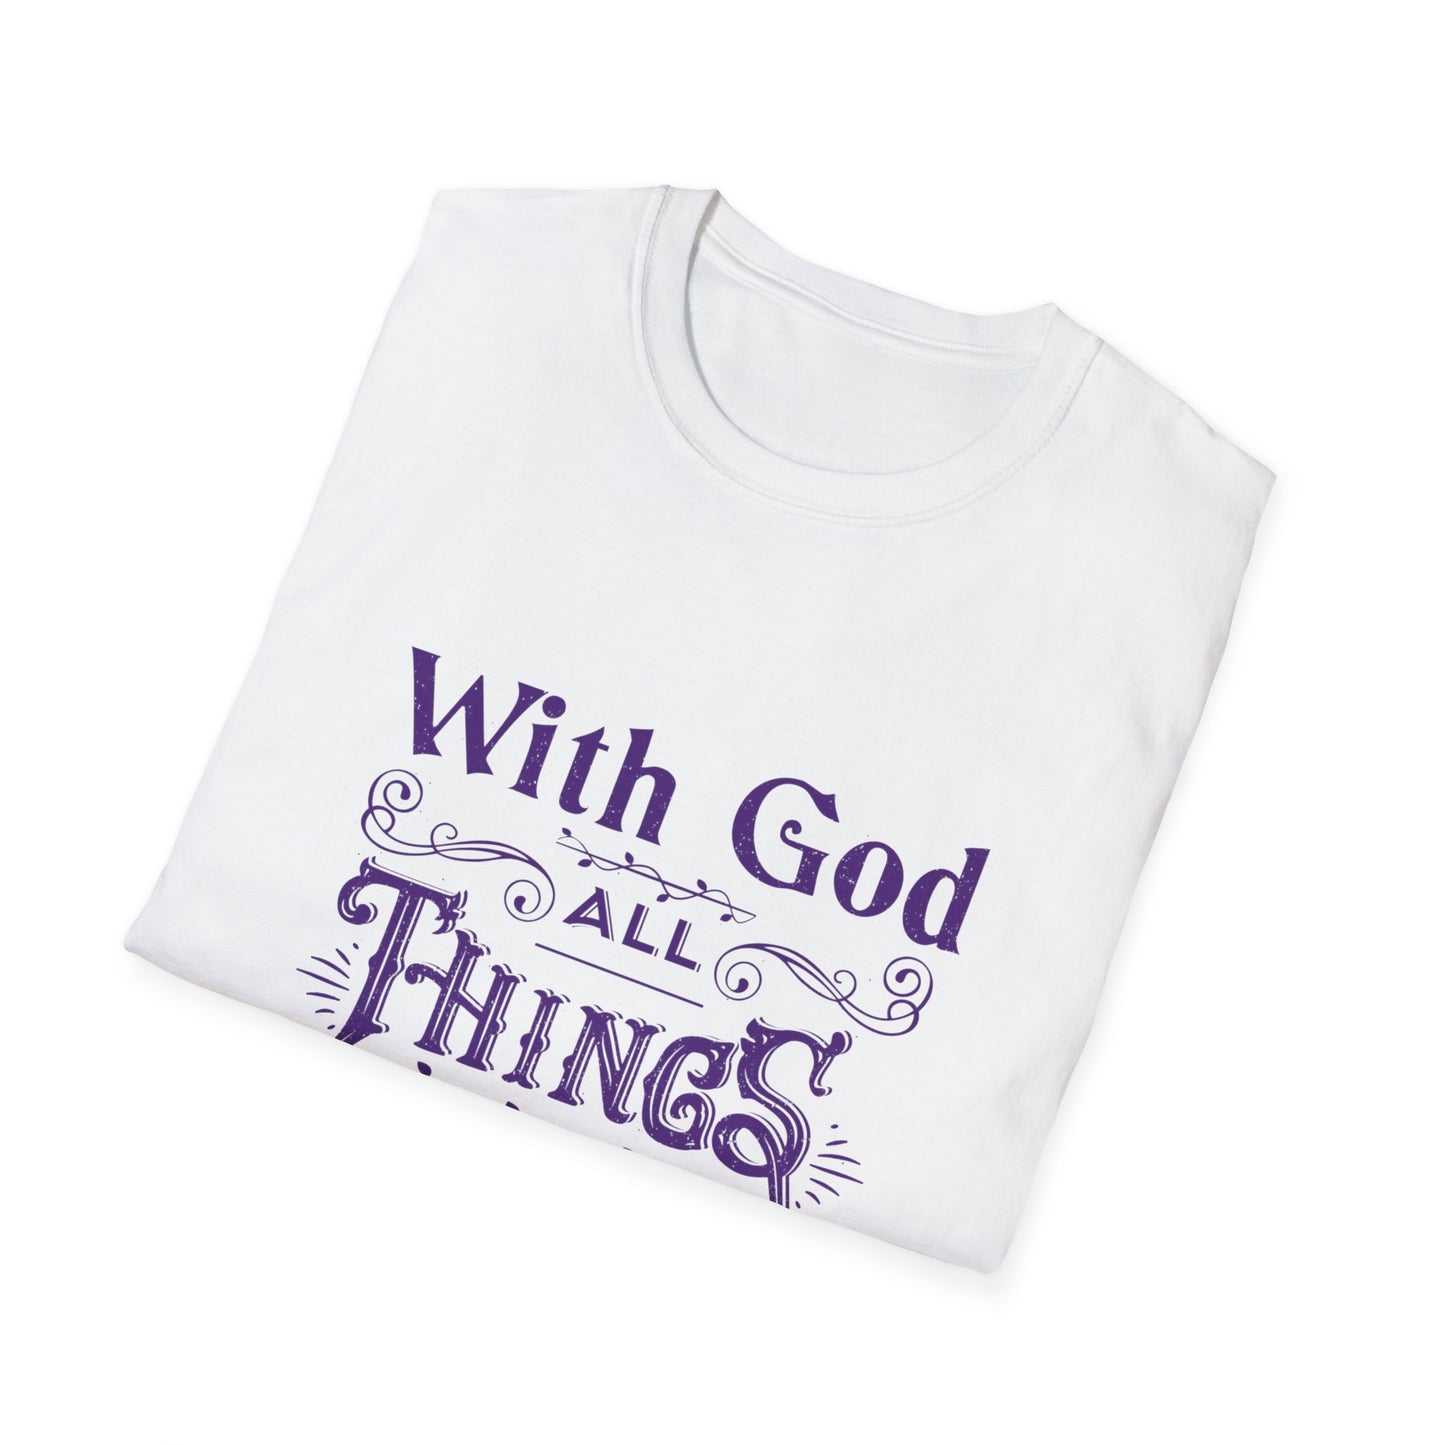 All Things Womens Relaxed/Plus Tshirt (Purple Logo)